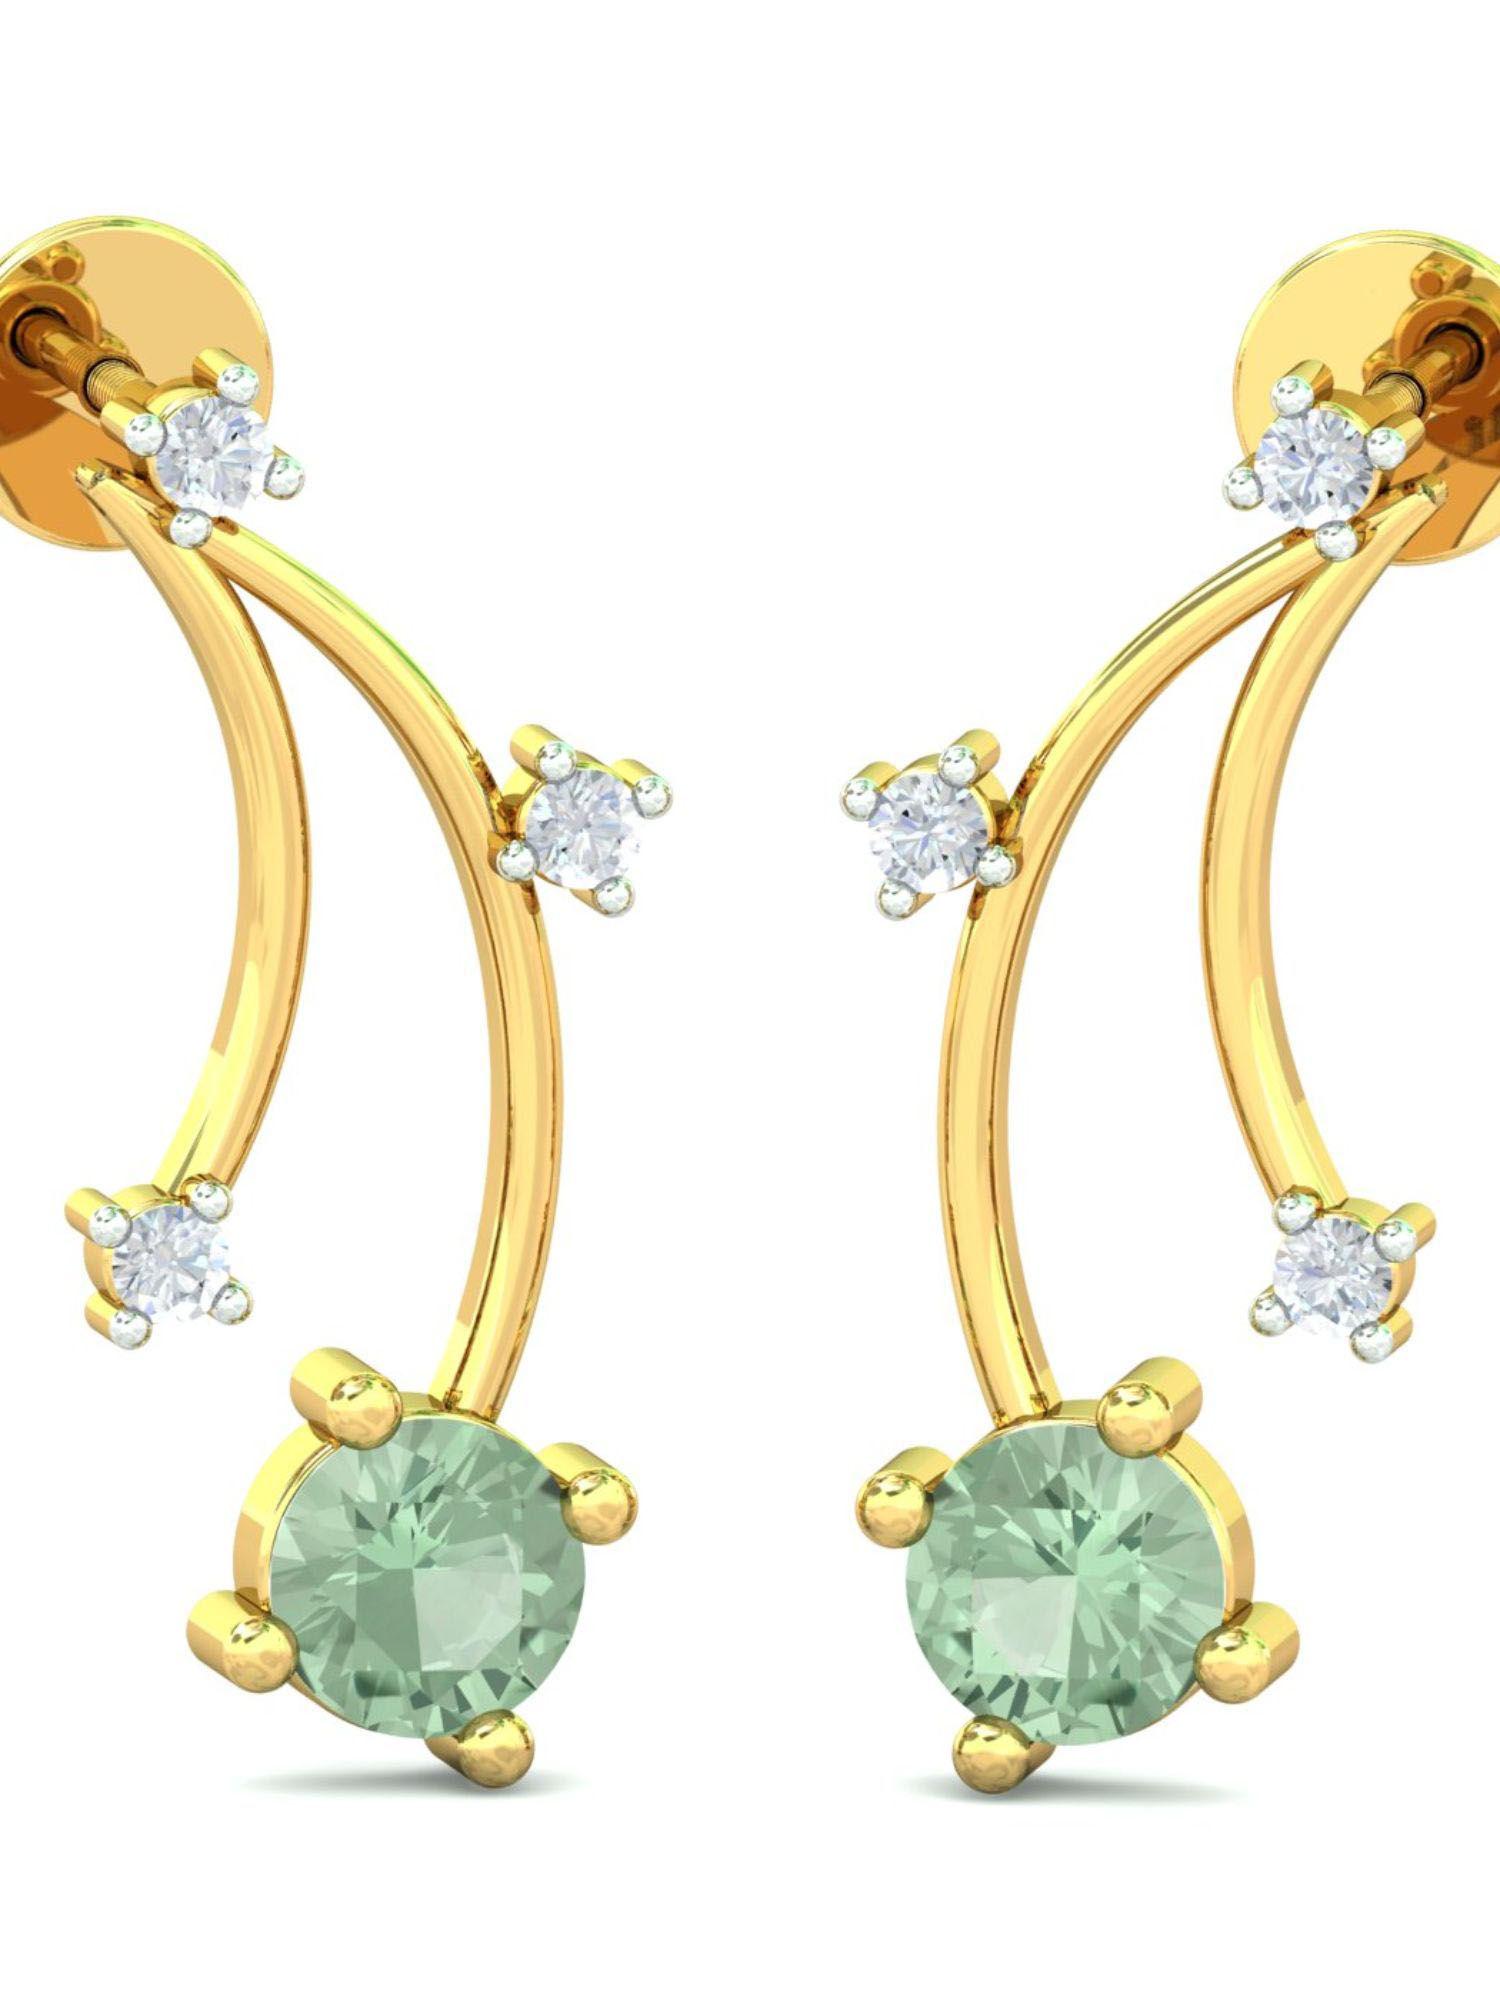 14k sleek stud earrings for women and girls